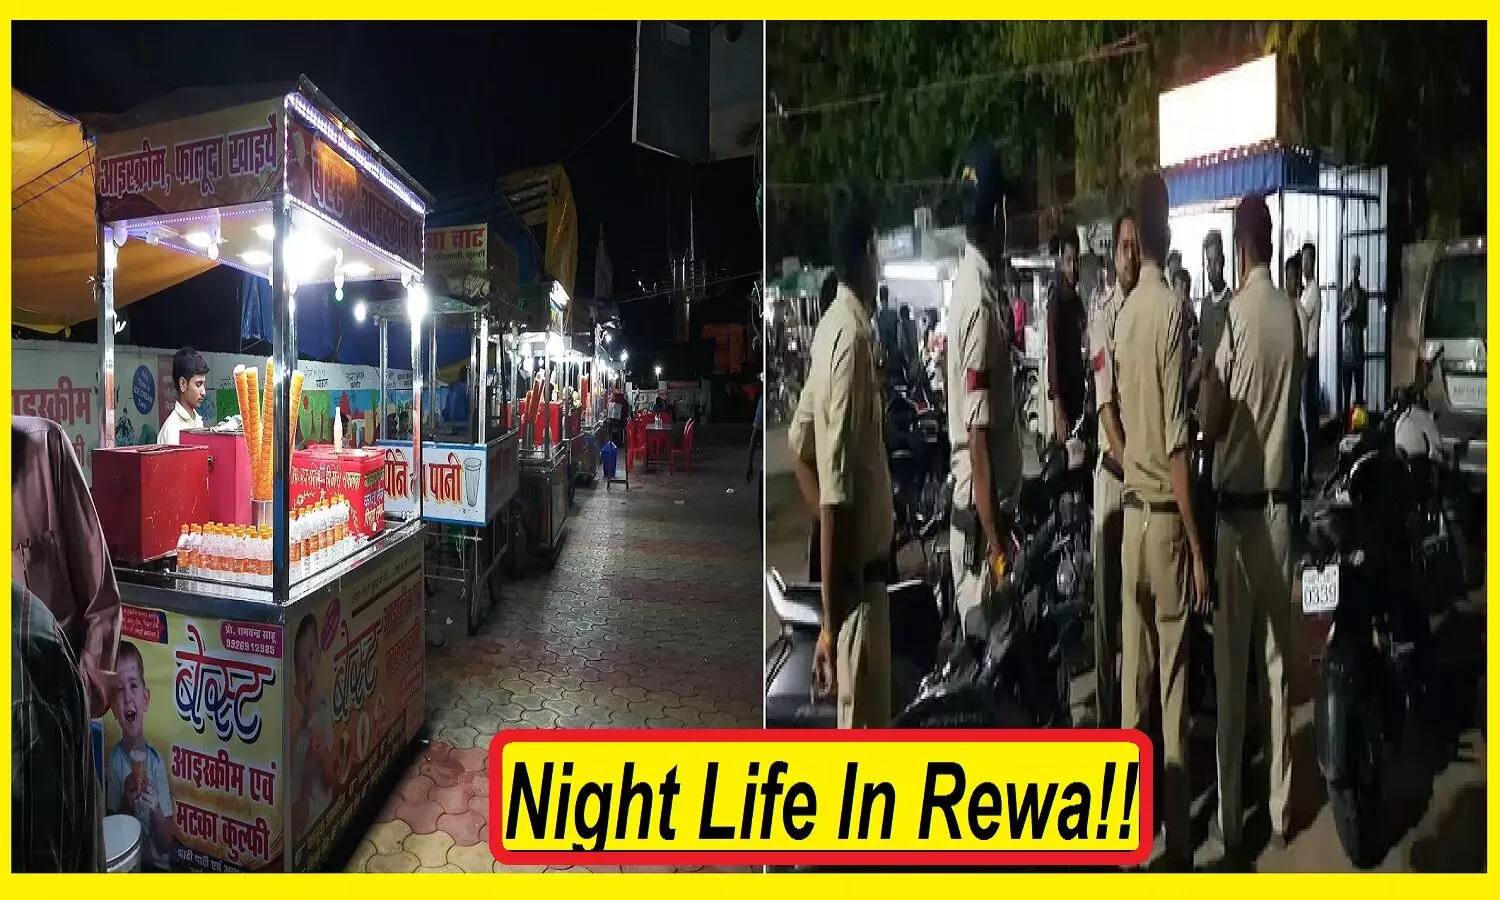 Night Life In Rewa: रीवा की नाइट लाइफ बोरिंग! रात 11 बजते ही पुलिस डंडे लेकर दौड़ाती है